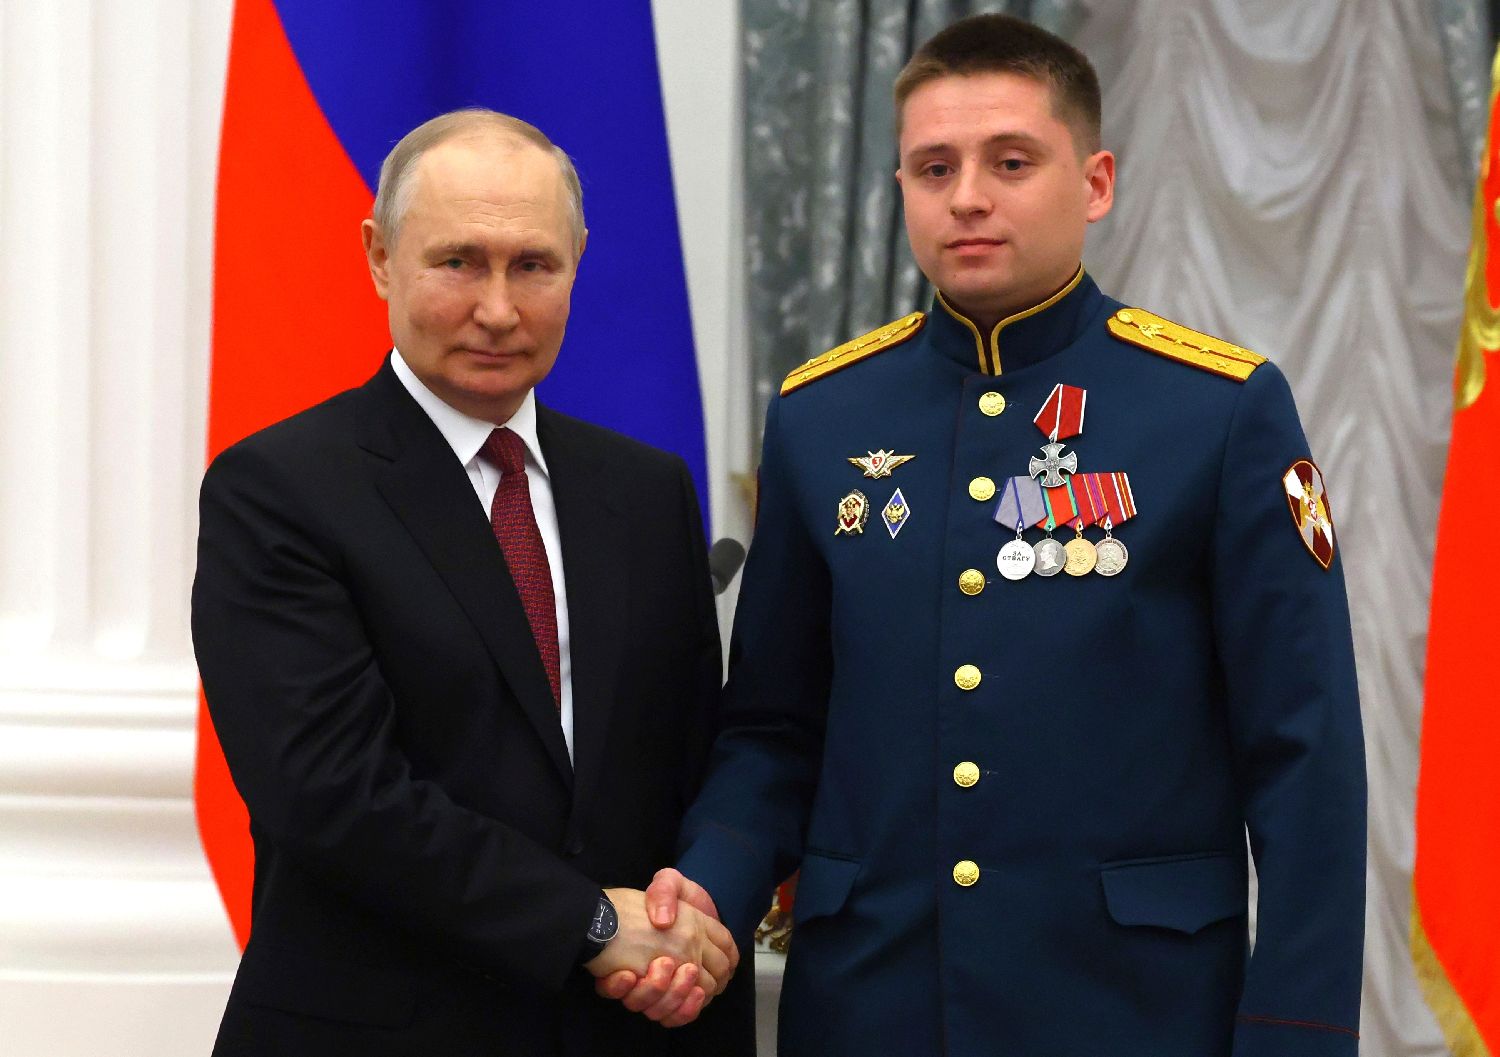 俄主流媒体广泛报道普京总统授予总台台长“友谊勋章” - 国际在线移动版